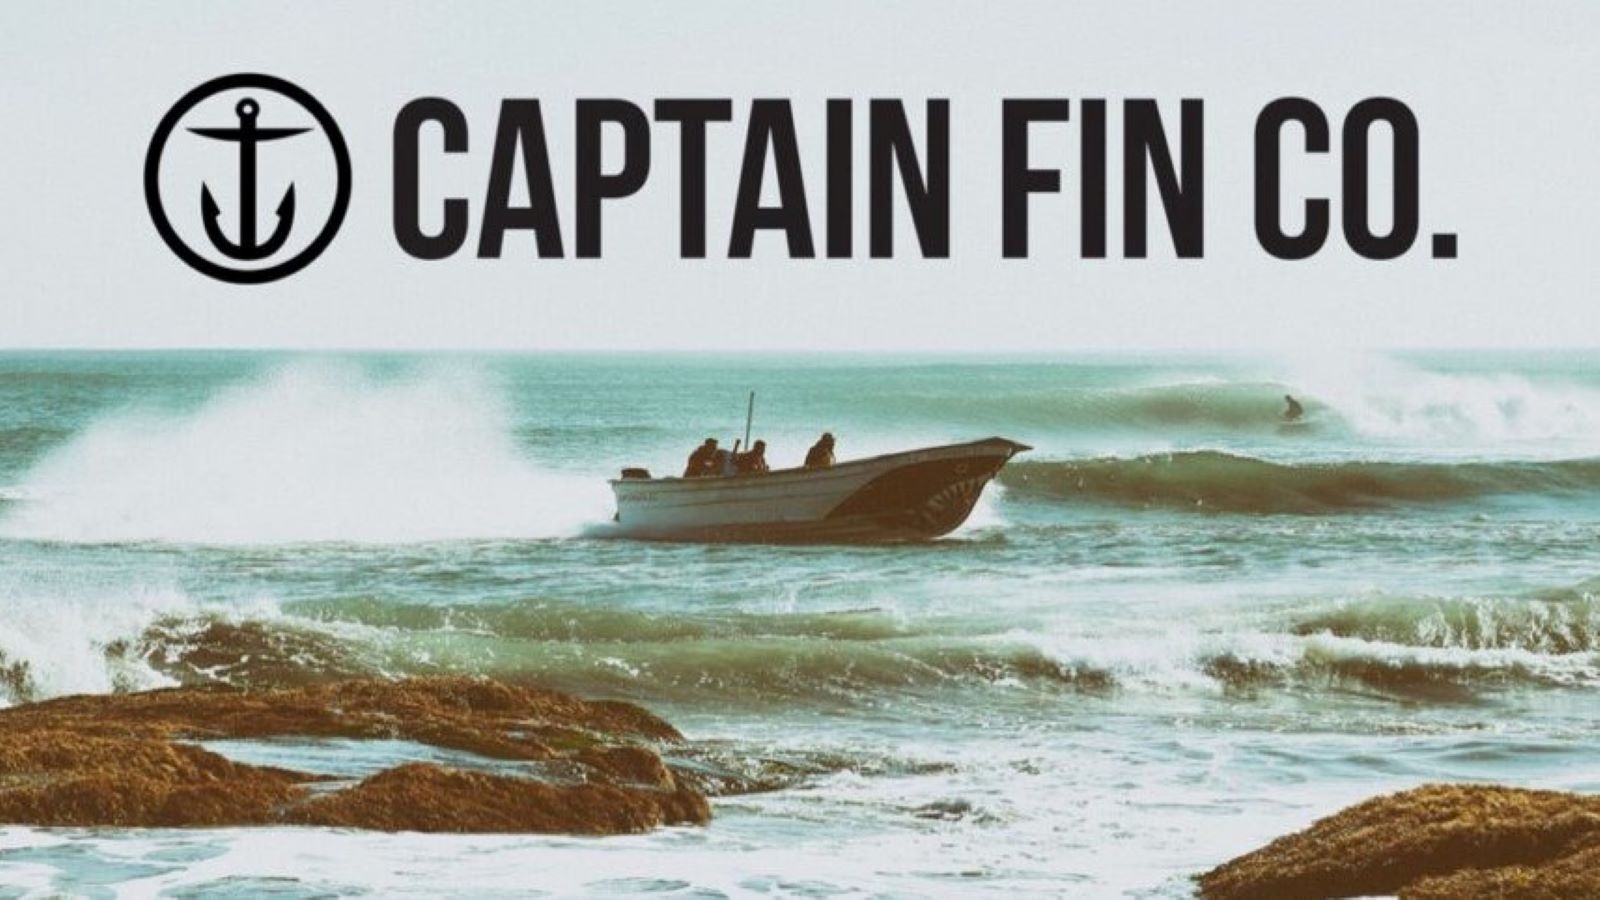 Captain Fin Co. logo